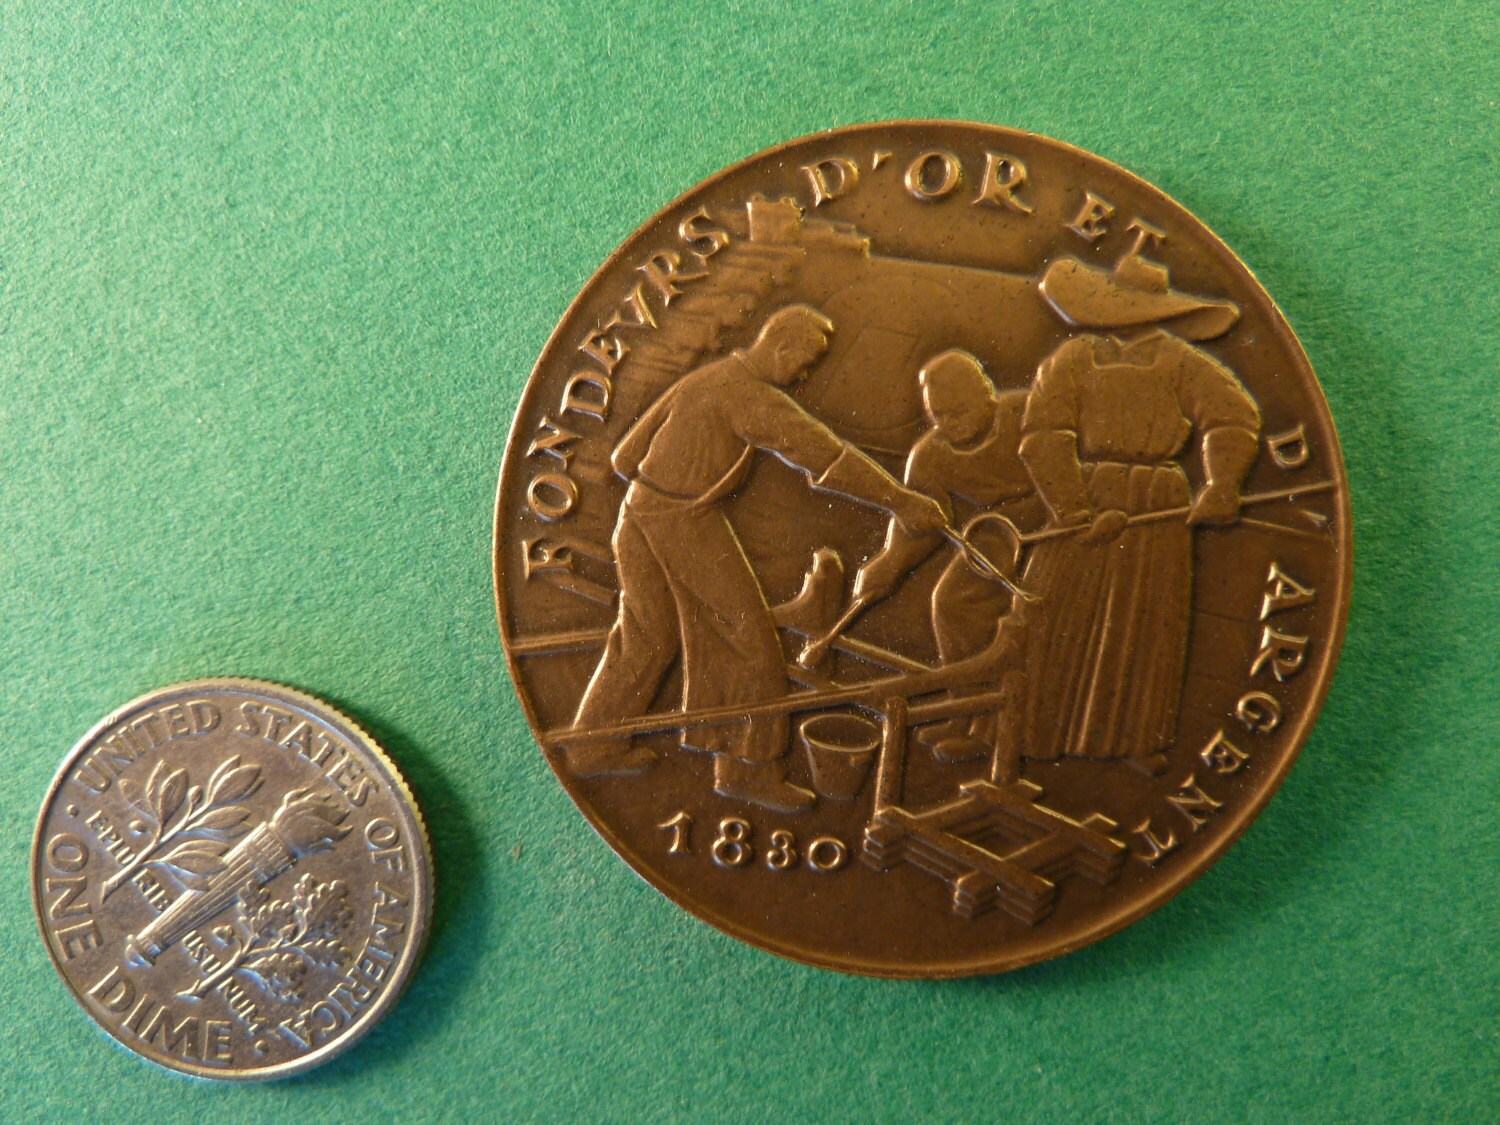 MONNAIE DE PARIS Médaille, Souvenir d'une visite à la Monnaie fme_623659  Medals